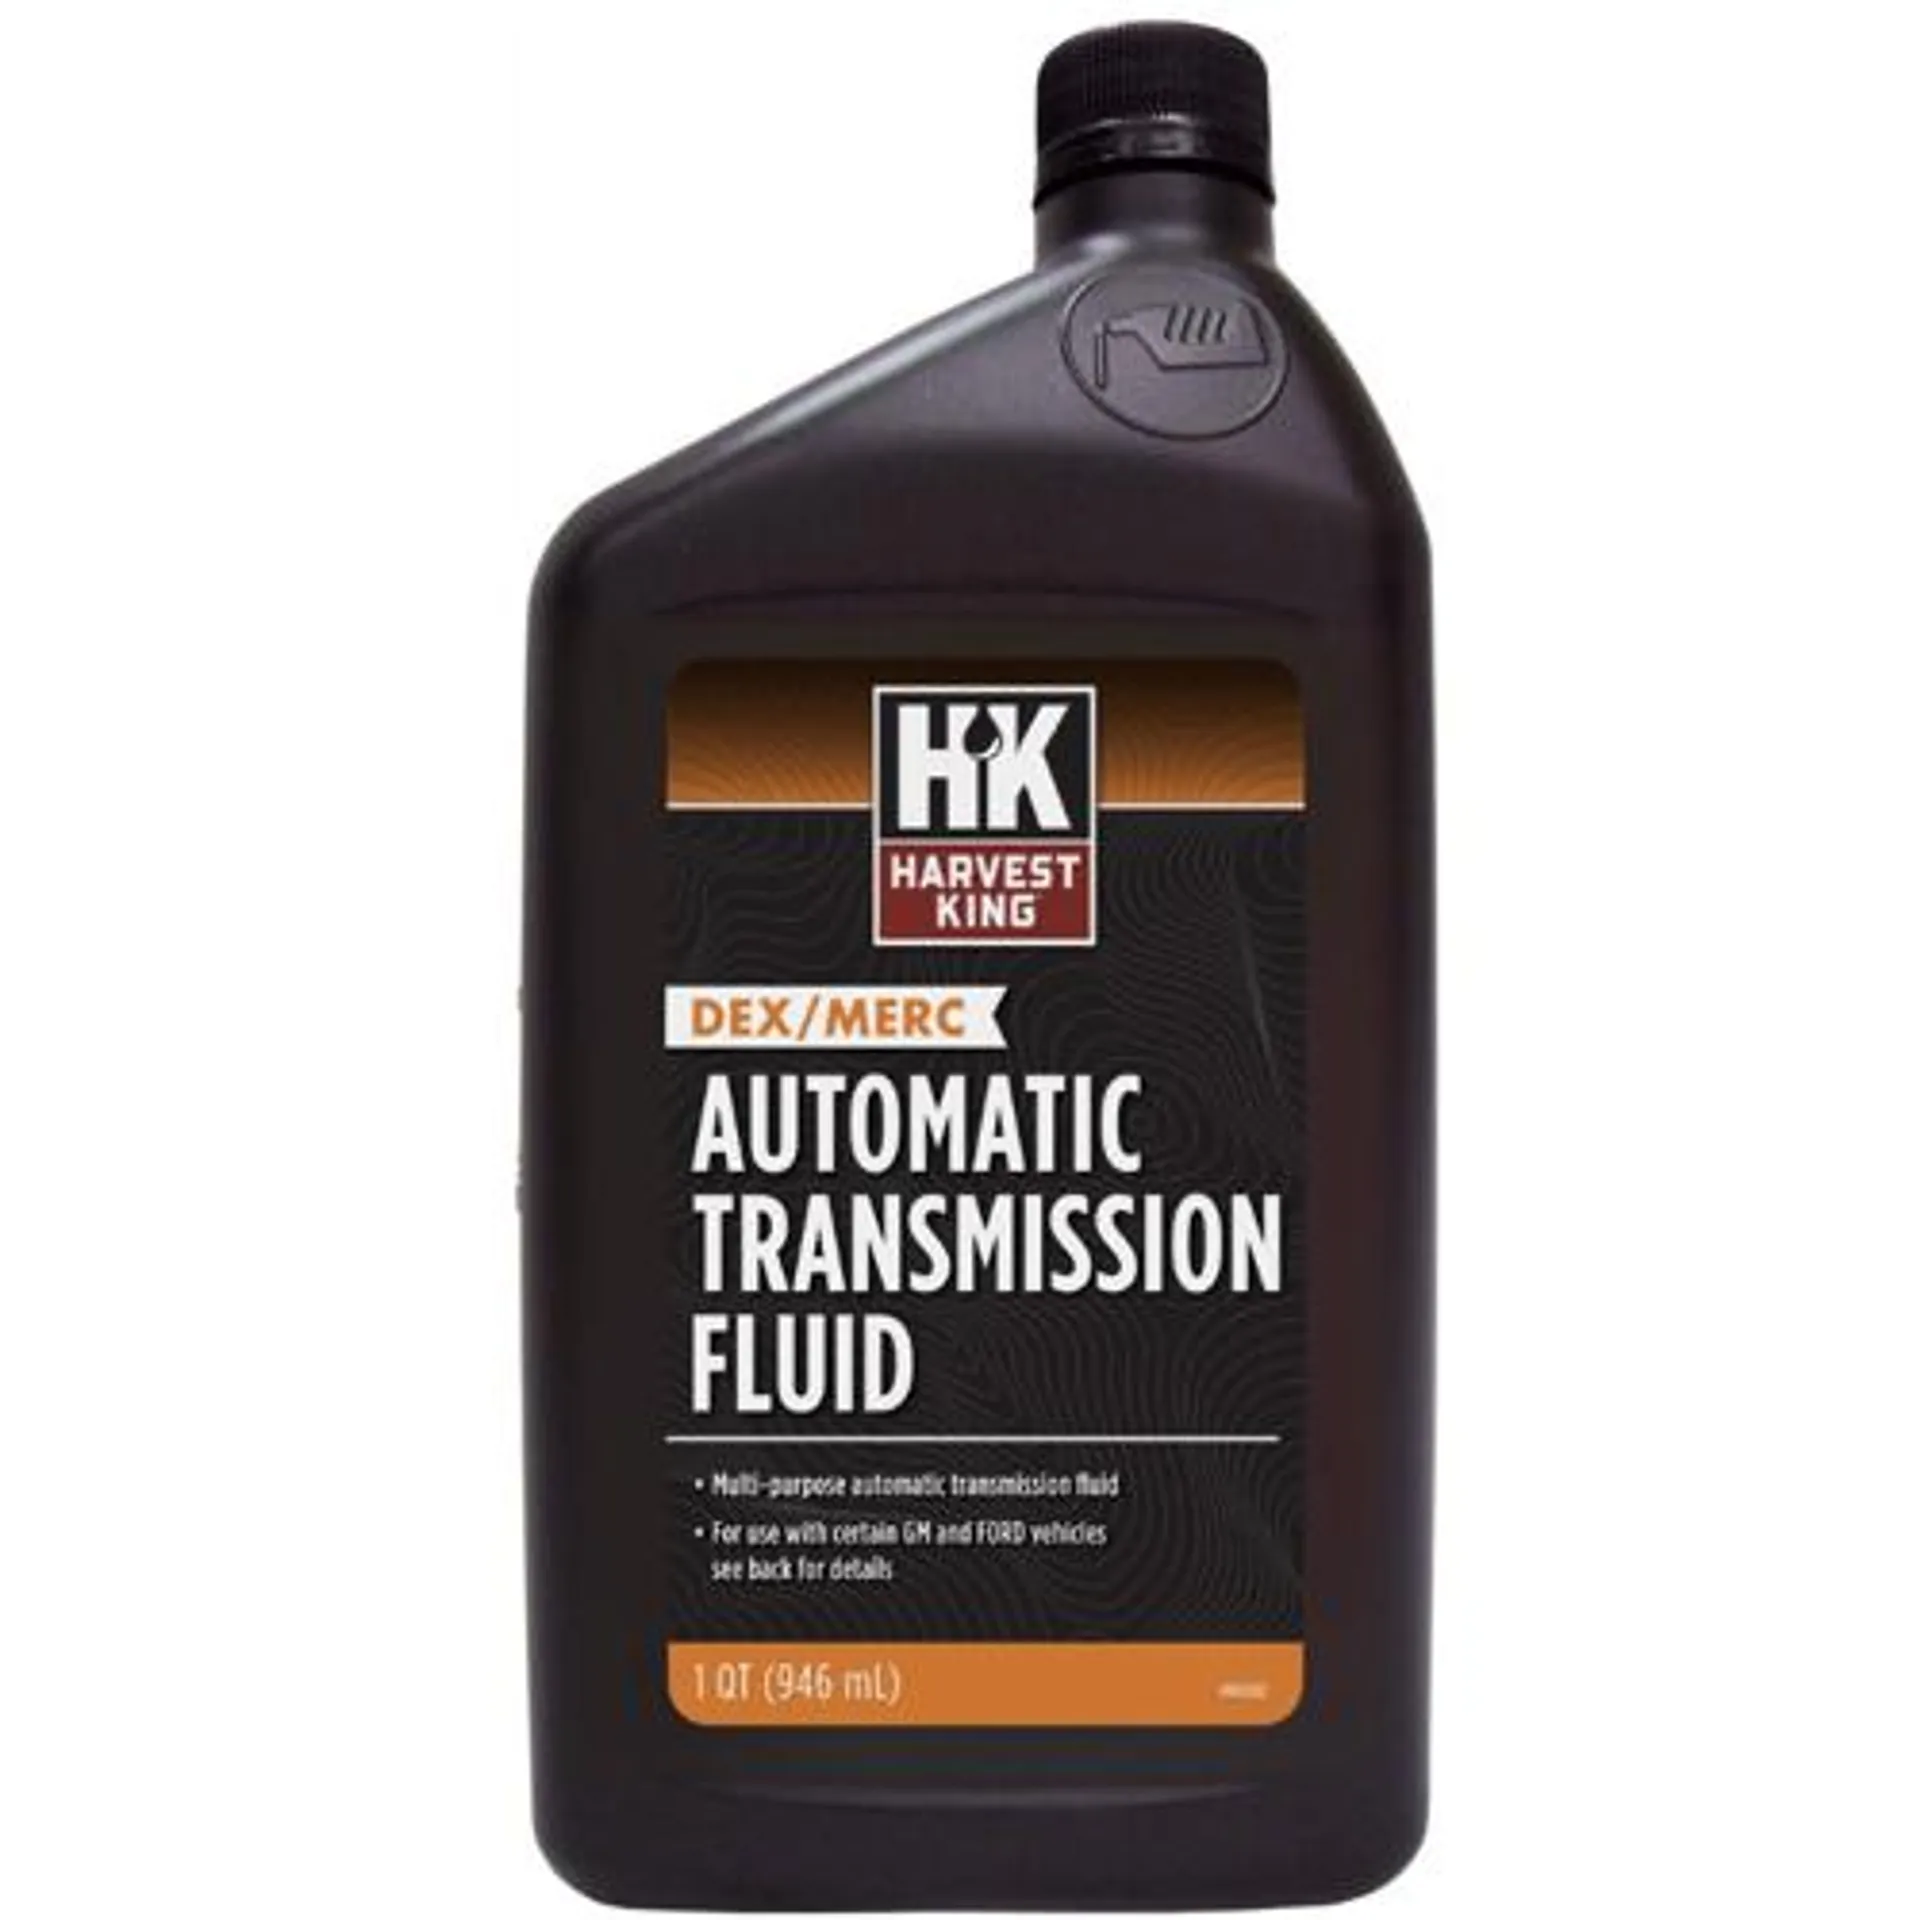 Harvest King Multi-Purpose Automatic Transmission Fluid